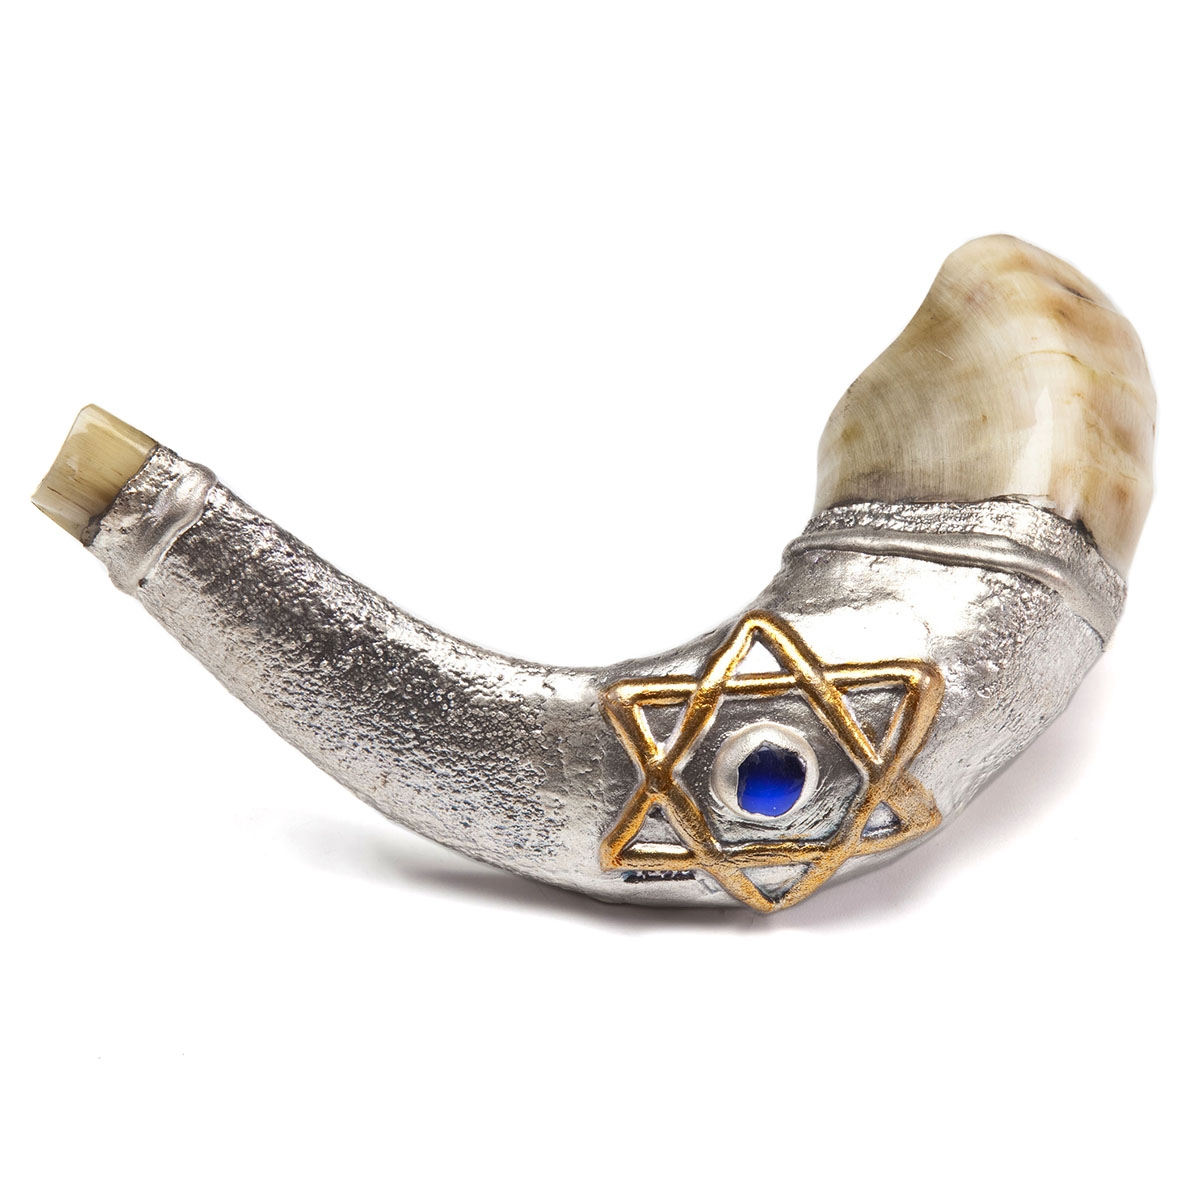 Barsheshet-Ribak Star of David with Blue Marble Silver-Plated Ram’s Horn Shofar - 1